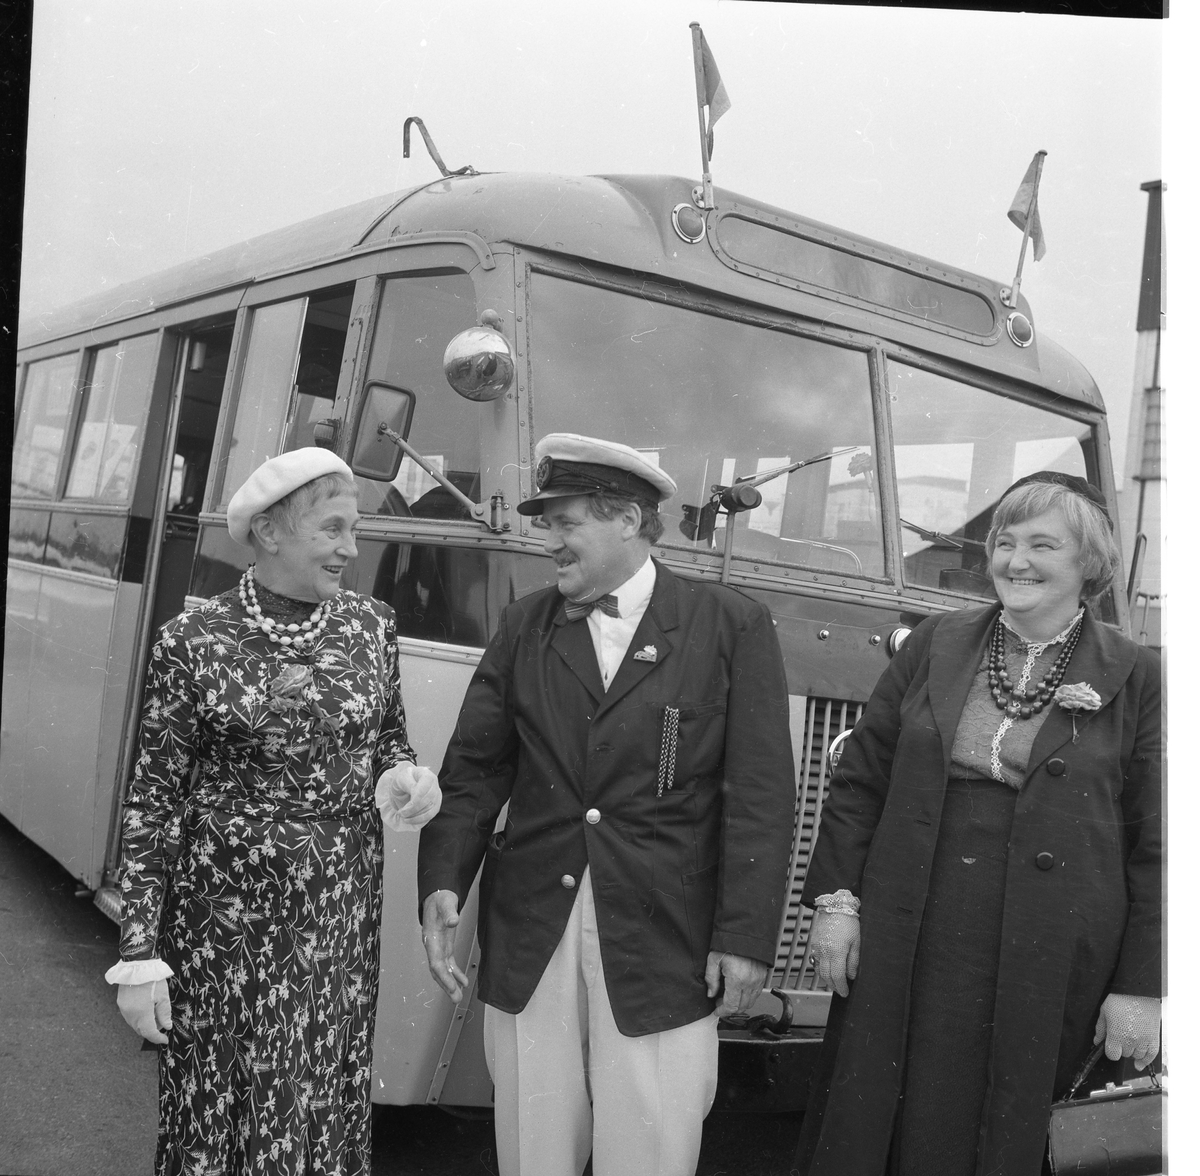 Två kvinnor flankerar en man som bär uniformskeps. De står framför en buss. De skrattar.